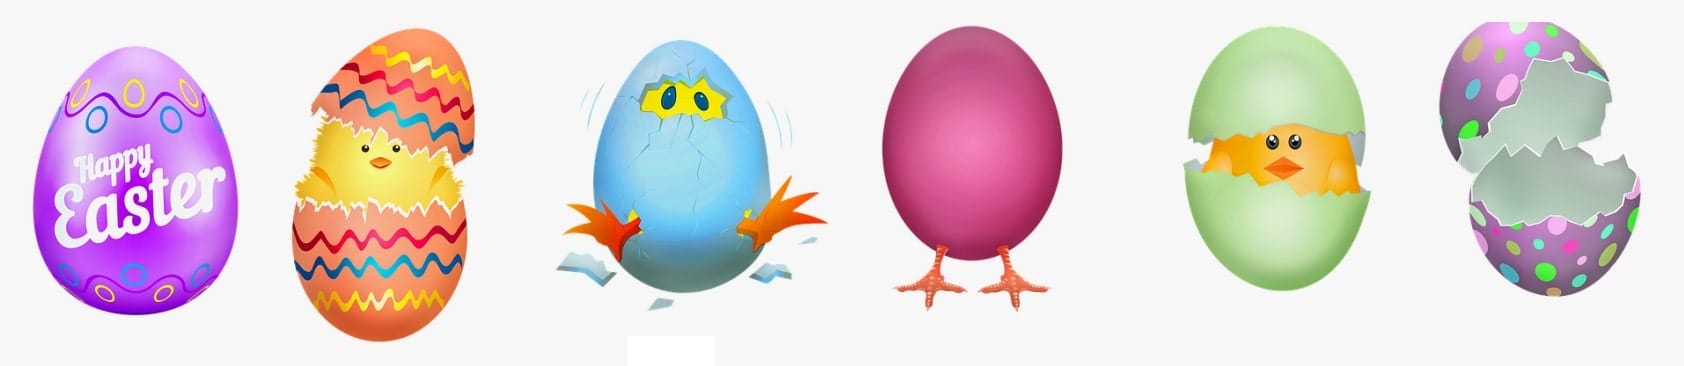 14 147472 Transparent Cracked Egg Png Cracked Easter Egg Cartoon Min